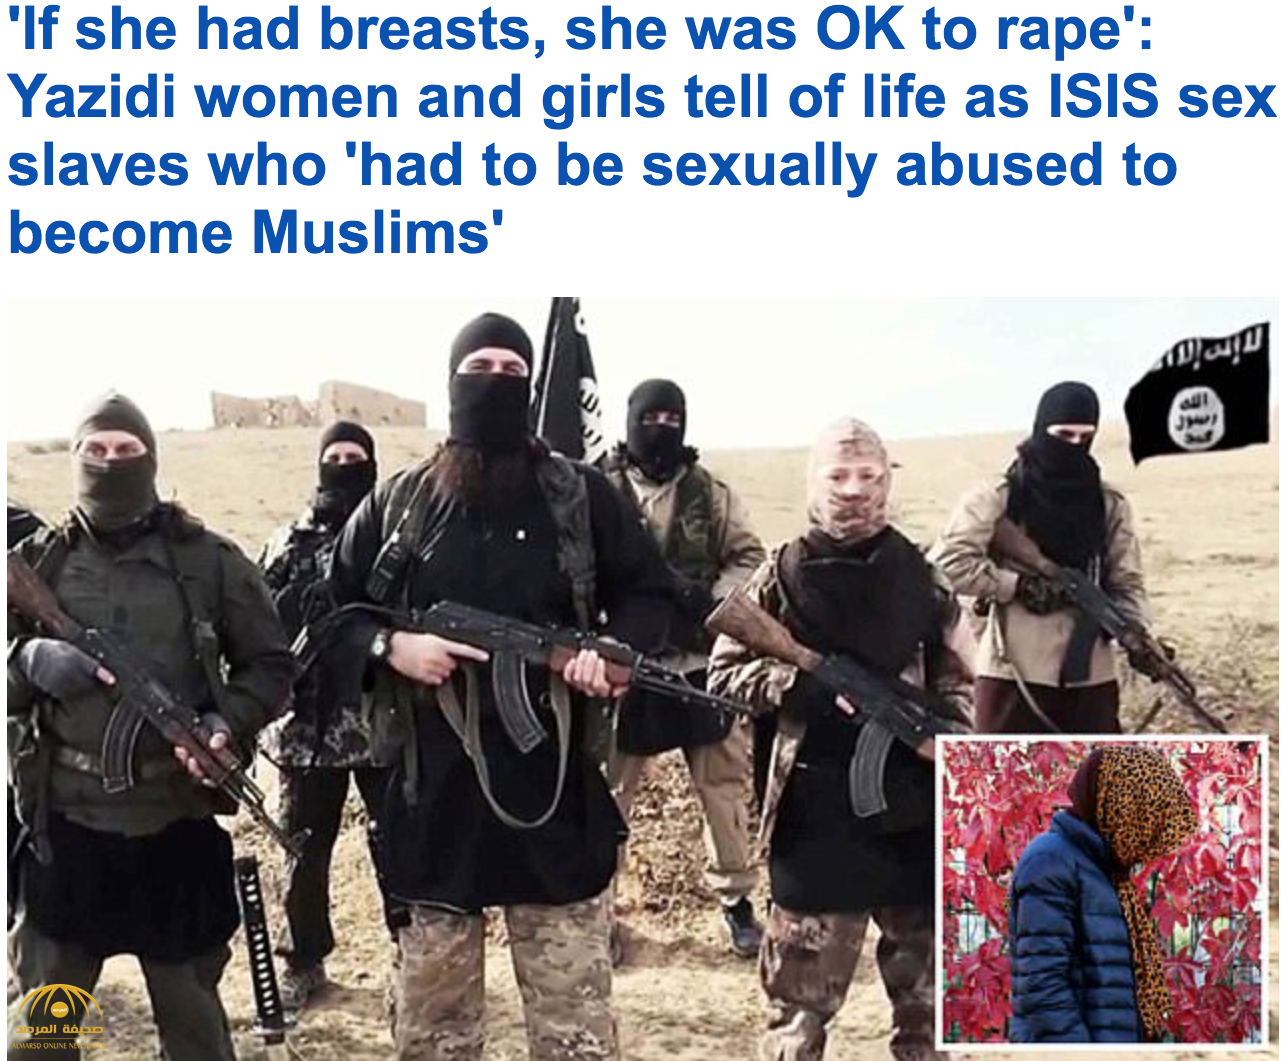 تفاصيل مثيرة في اغتصاب تنظيم داعش للإيزيديات.. هكذا يتعاملون مع النساء ذات الأثداء الكبيرة!